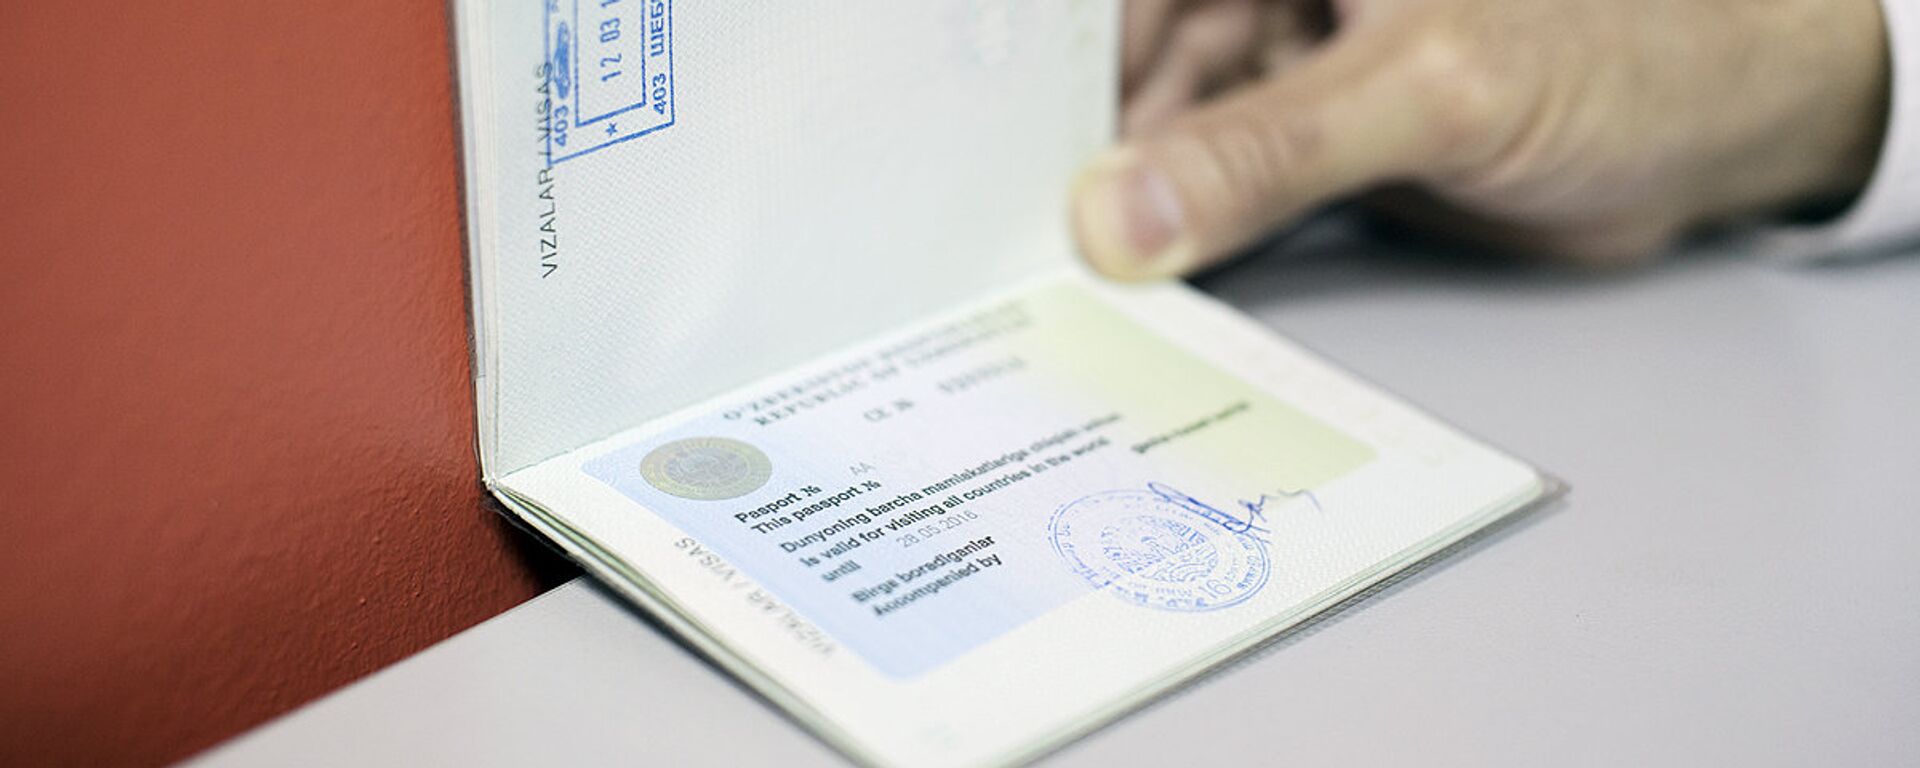 Узбекский паспорт - Sputnik Ўзбекистон, 1920, 14.05.2020